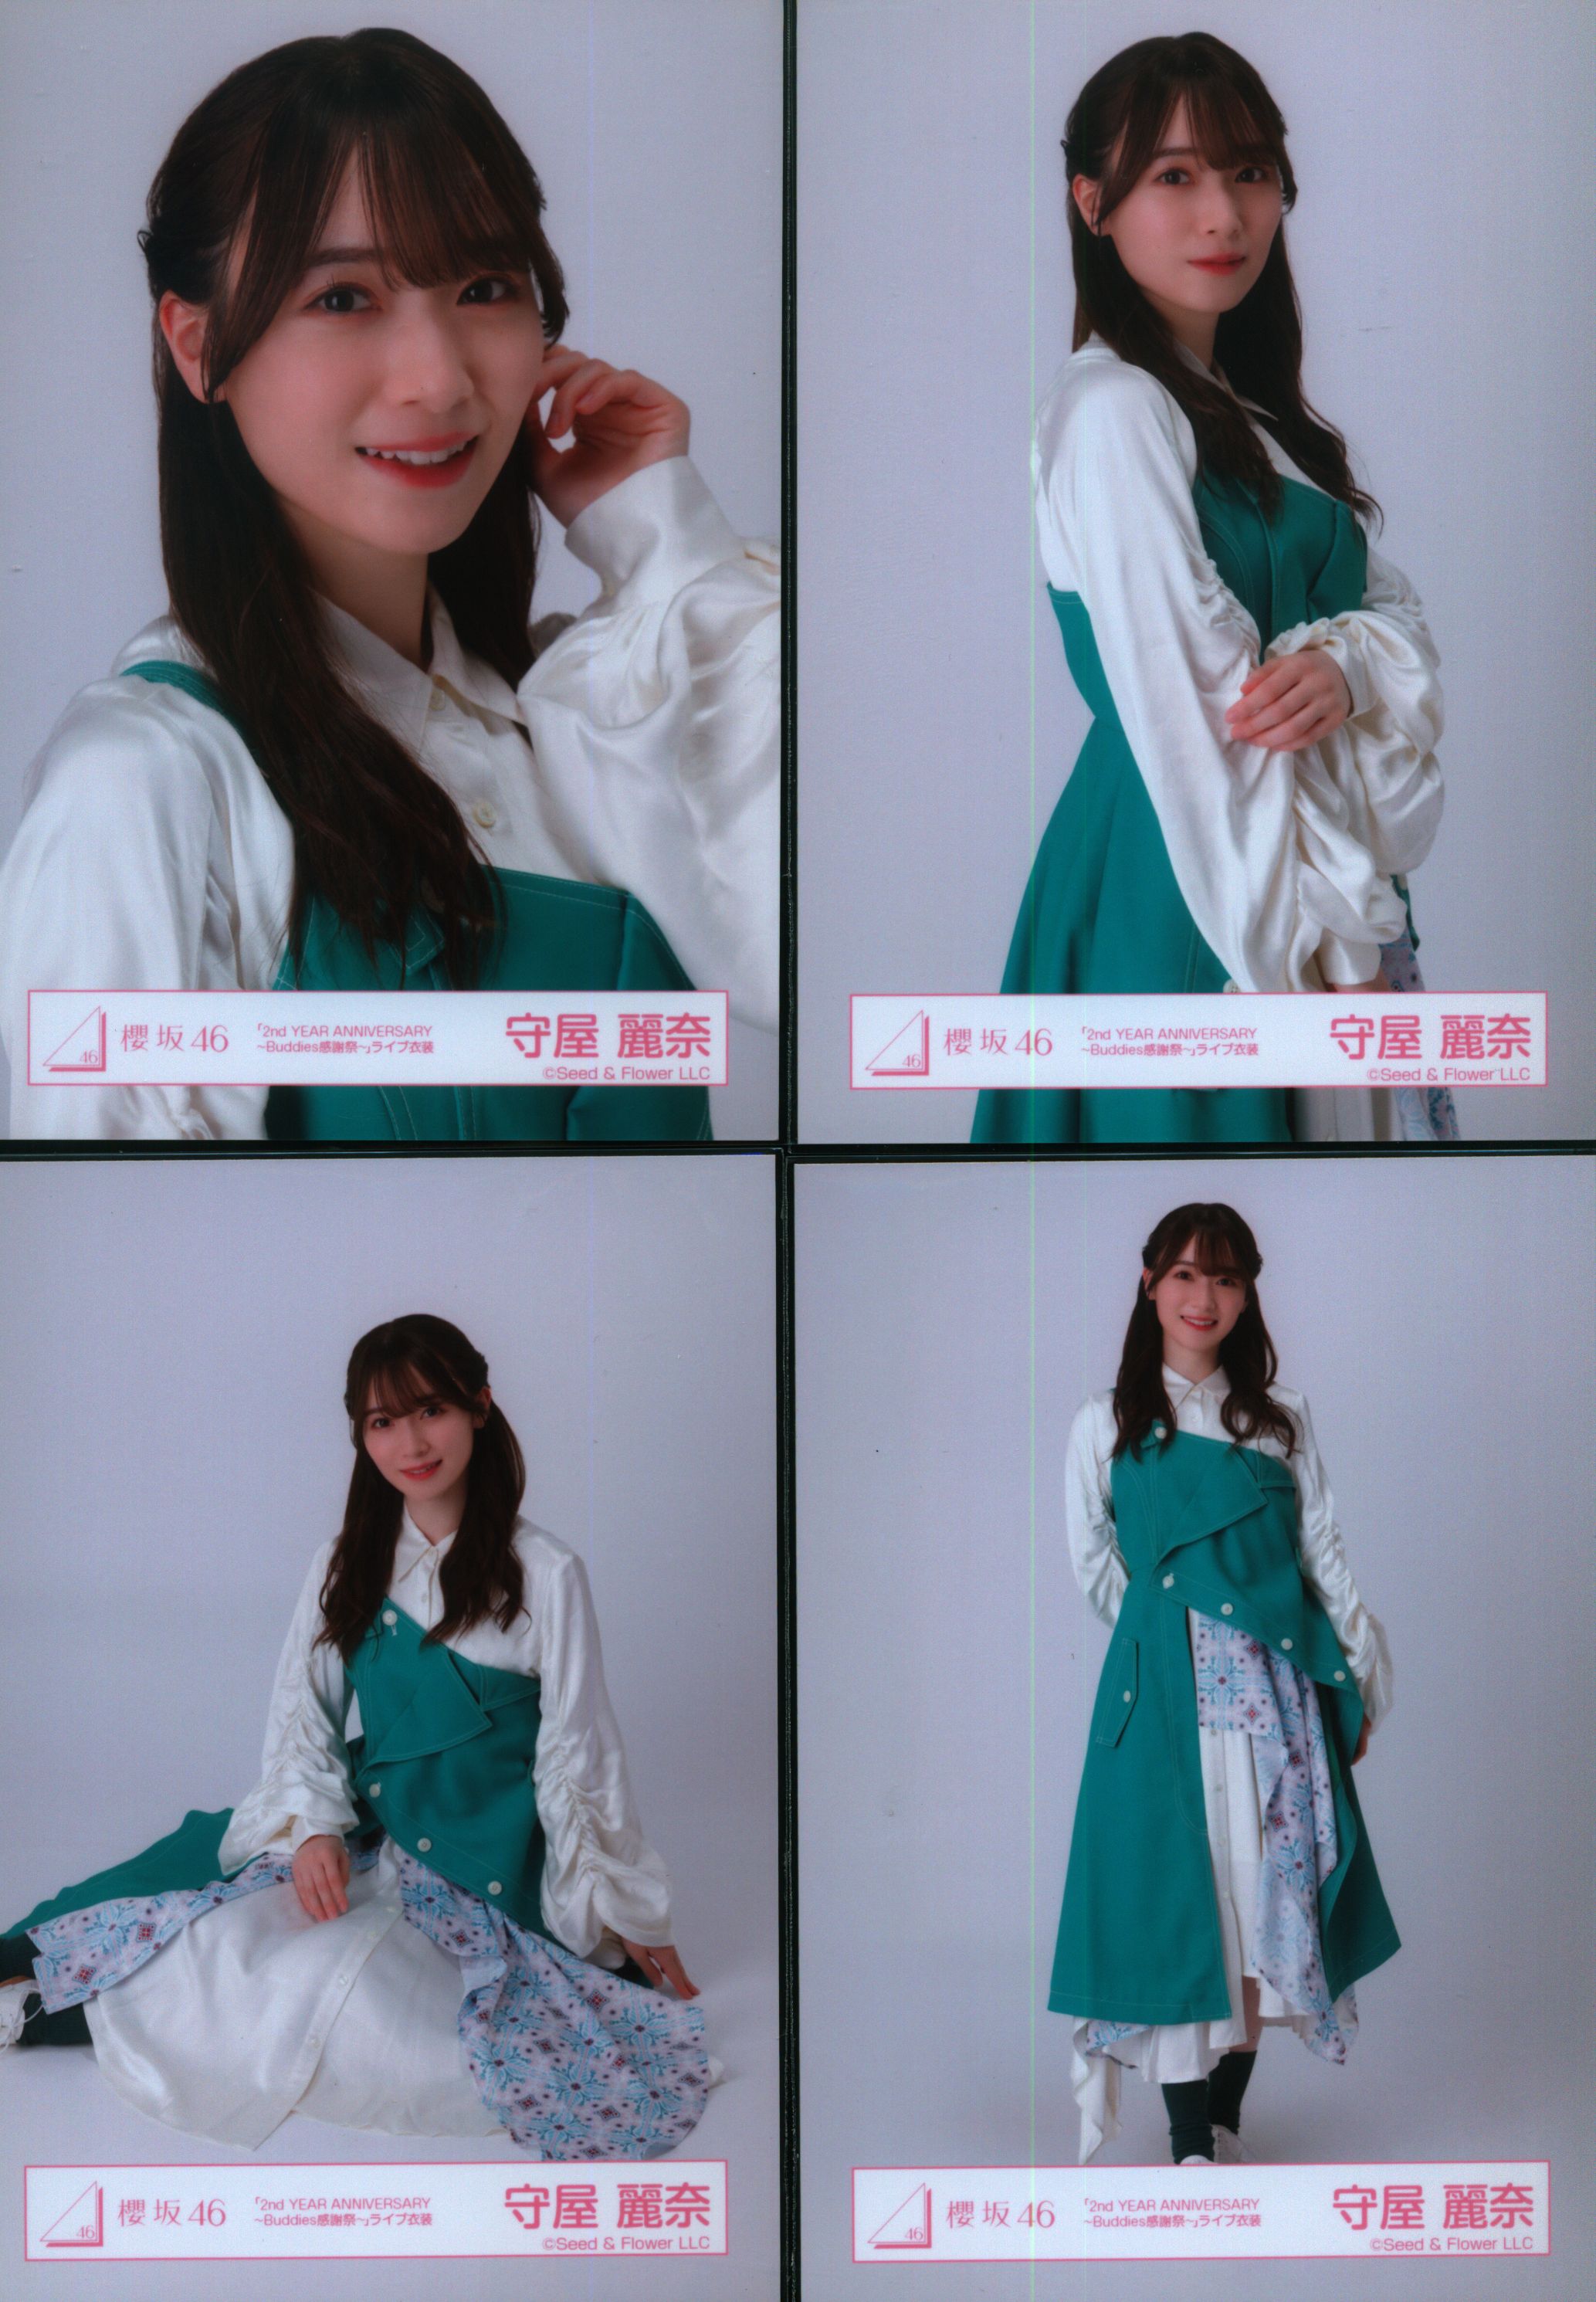 櫻坂46 遠藤理子3rd YEAR ANNIVERSARY LIVE ライブ衣装 - 女性アイドル